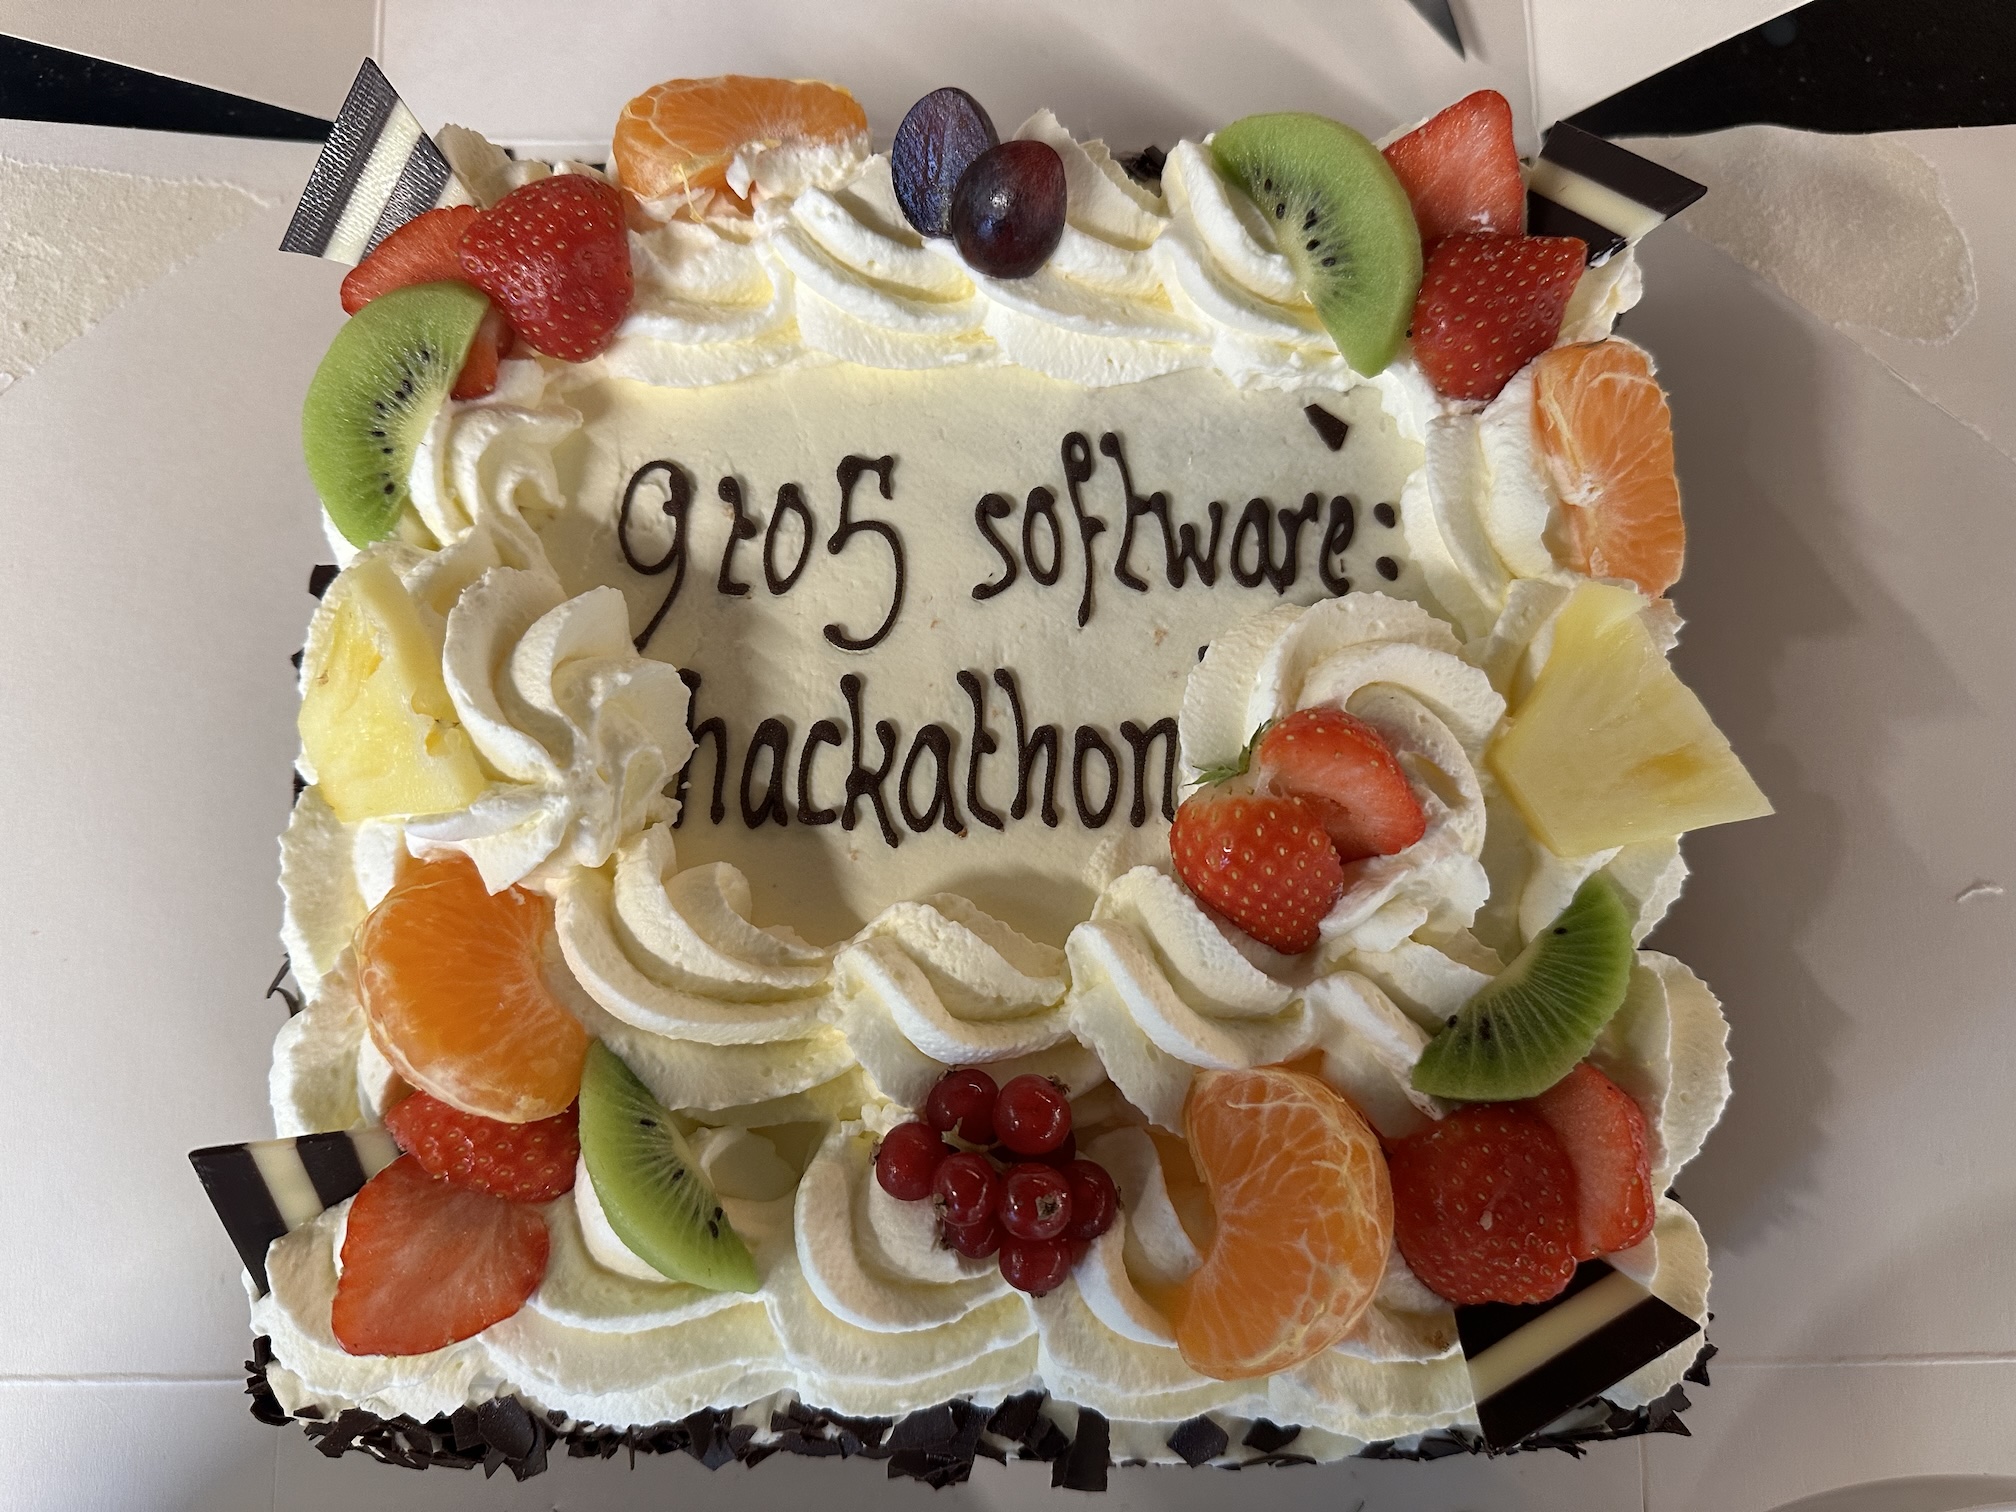 Hackathon - taart voor 9to5